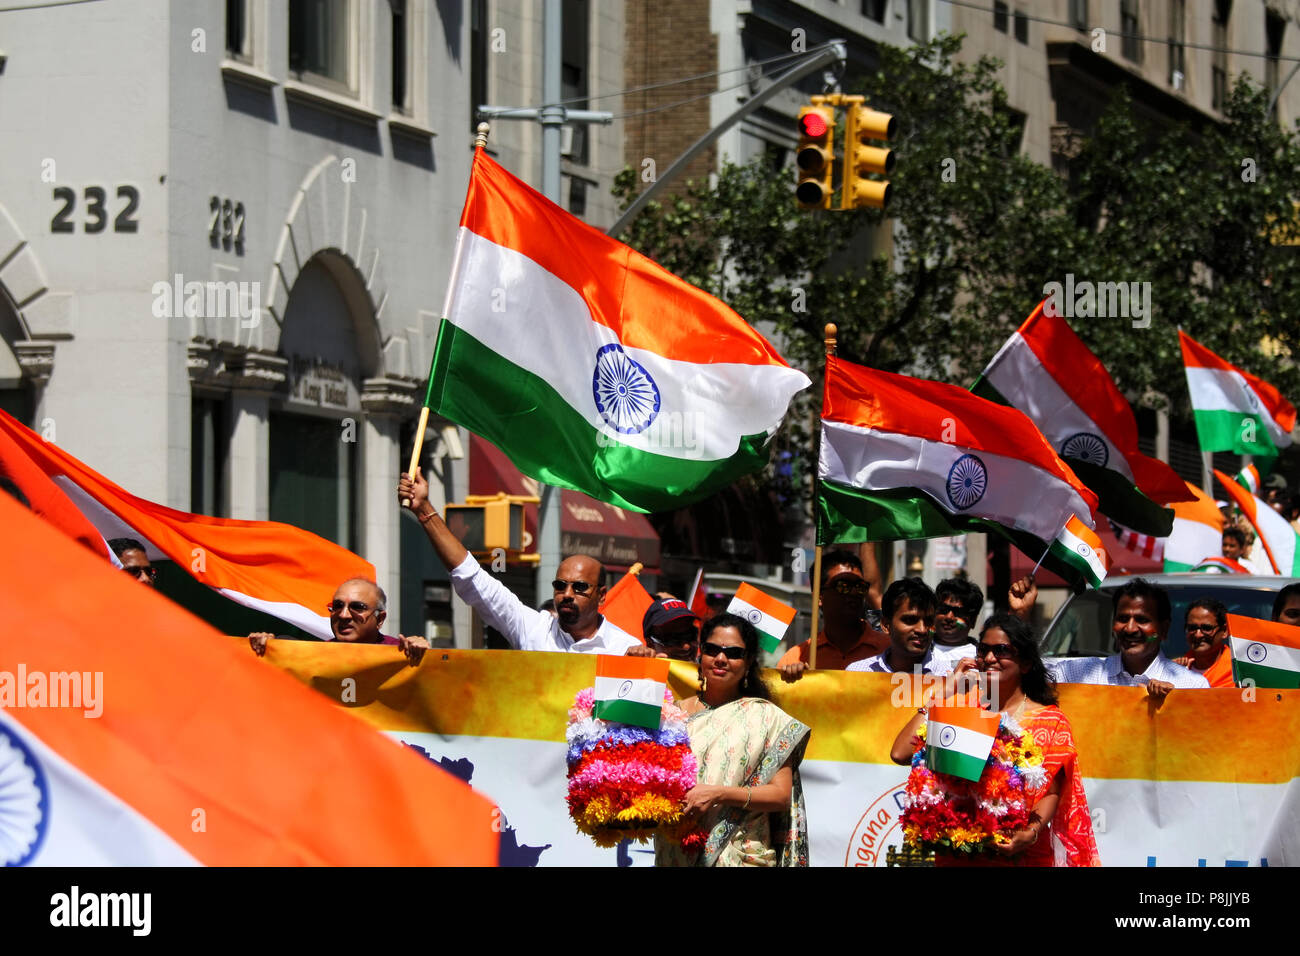 NEW YORK, NY - AUGUST 21: lebendige und vielfältige Massen Teil in der 36Th Indien Day Parade nehmen der Unabhängigkeit Indiens Tag auf der Madison Avenue, M zu feiern. Stockfoto